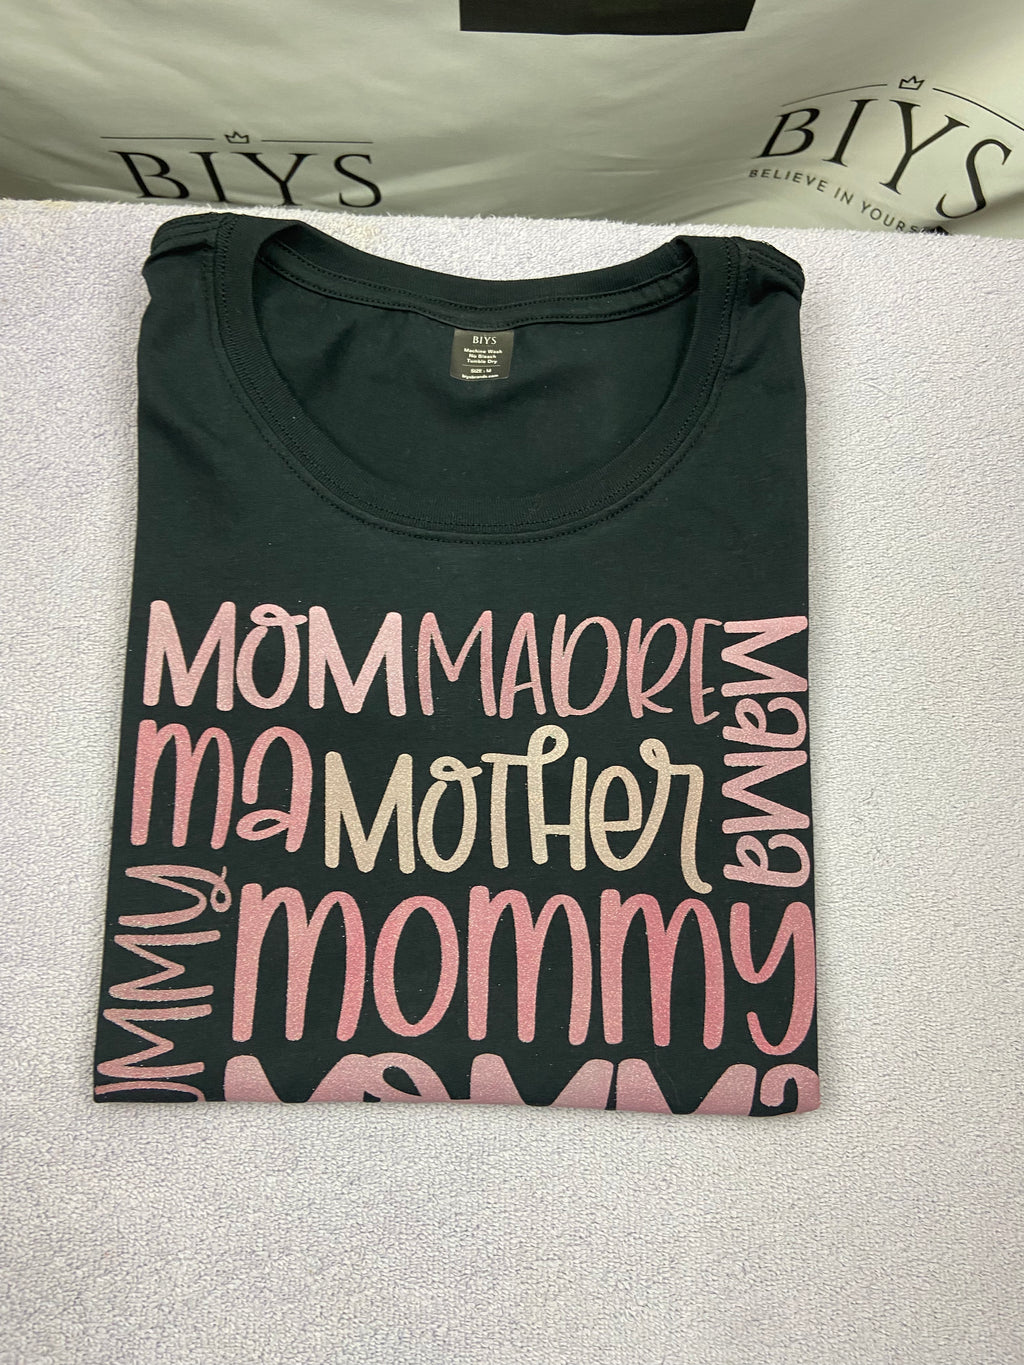 mom, mum, mommy, momma